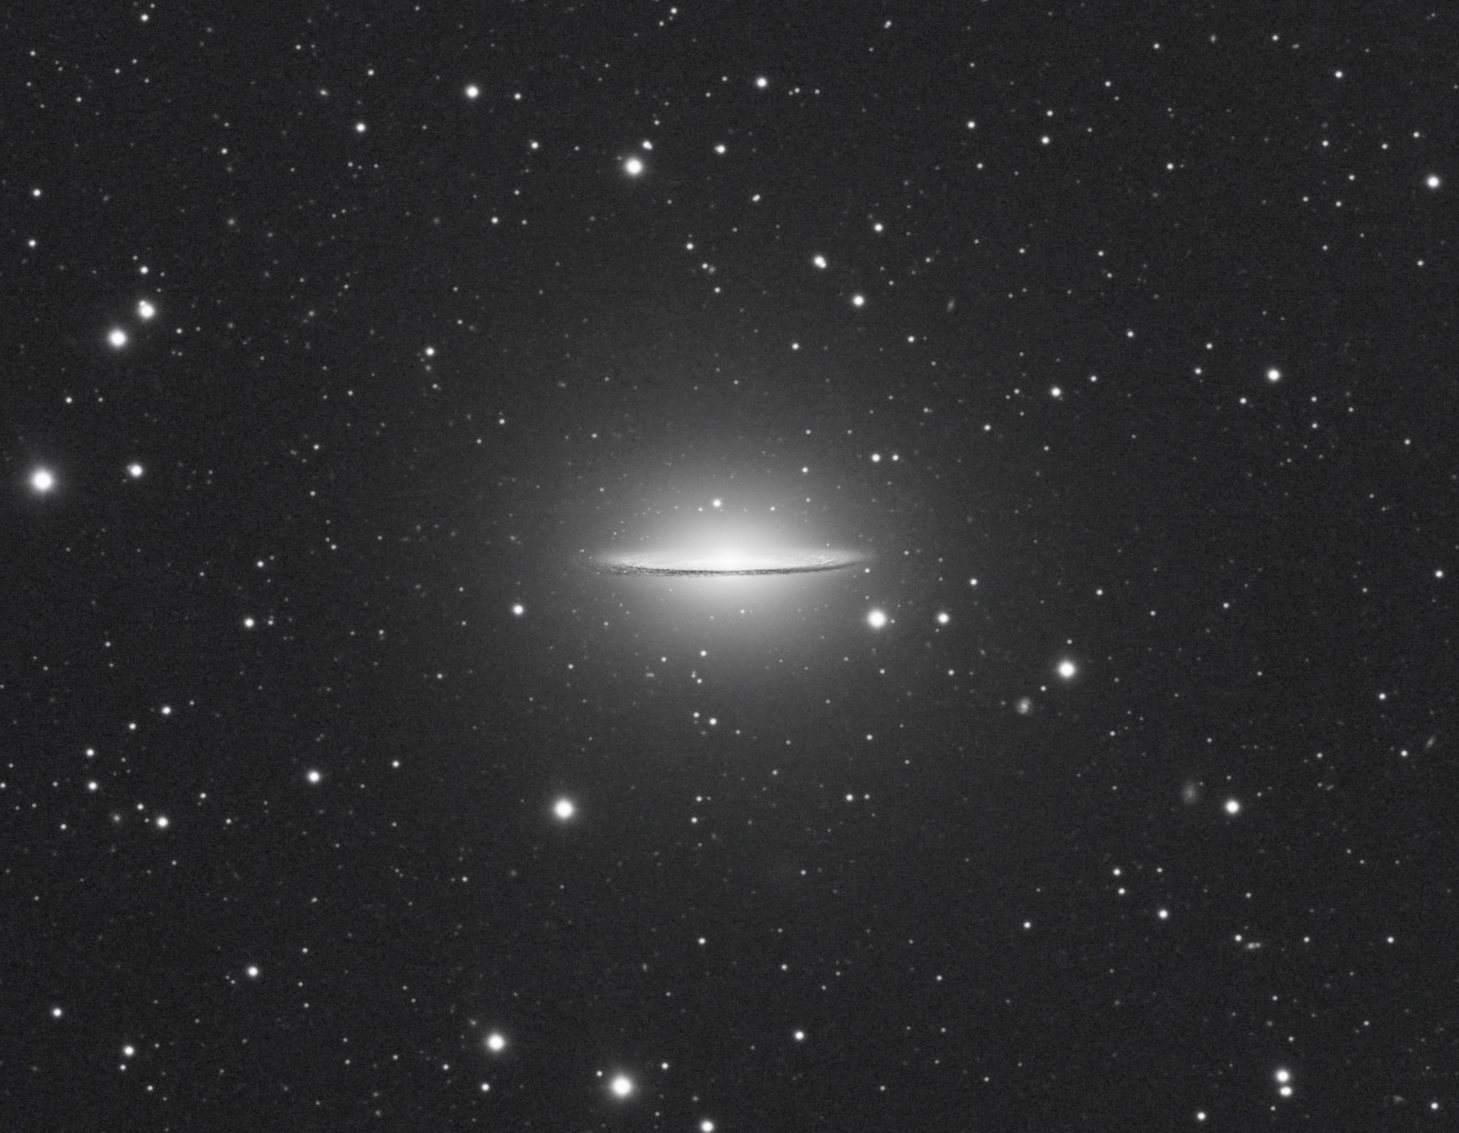 M104 Luminance (100% crop)